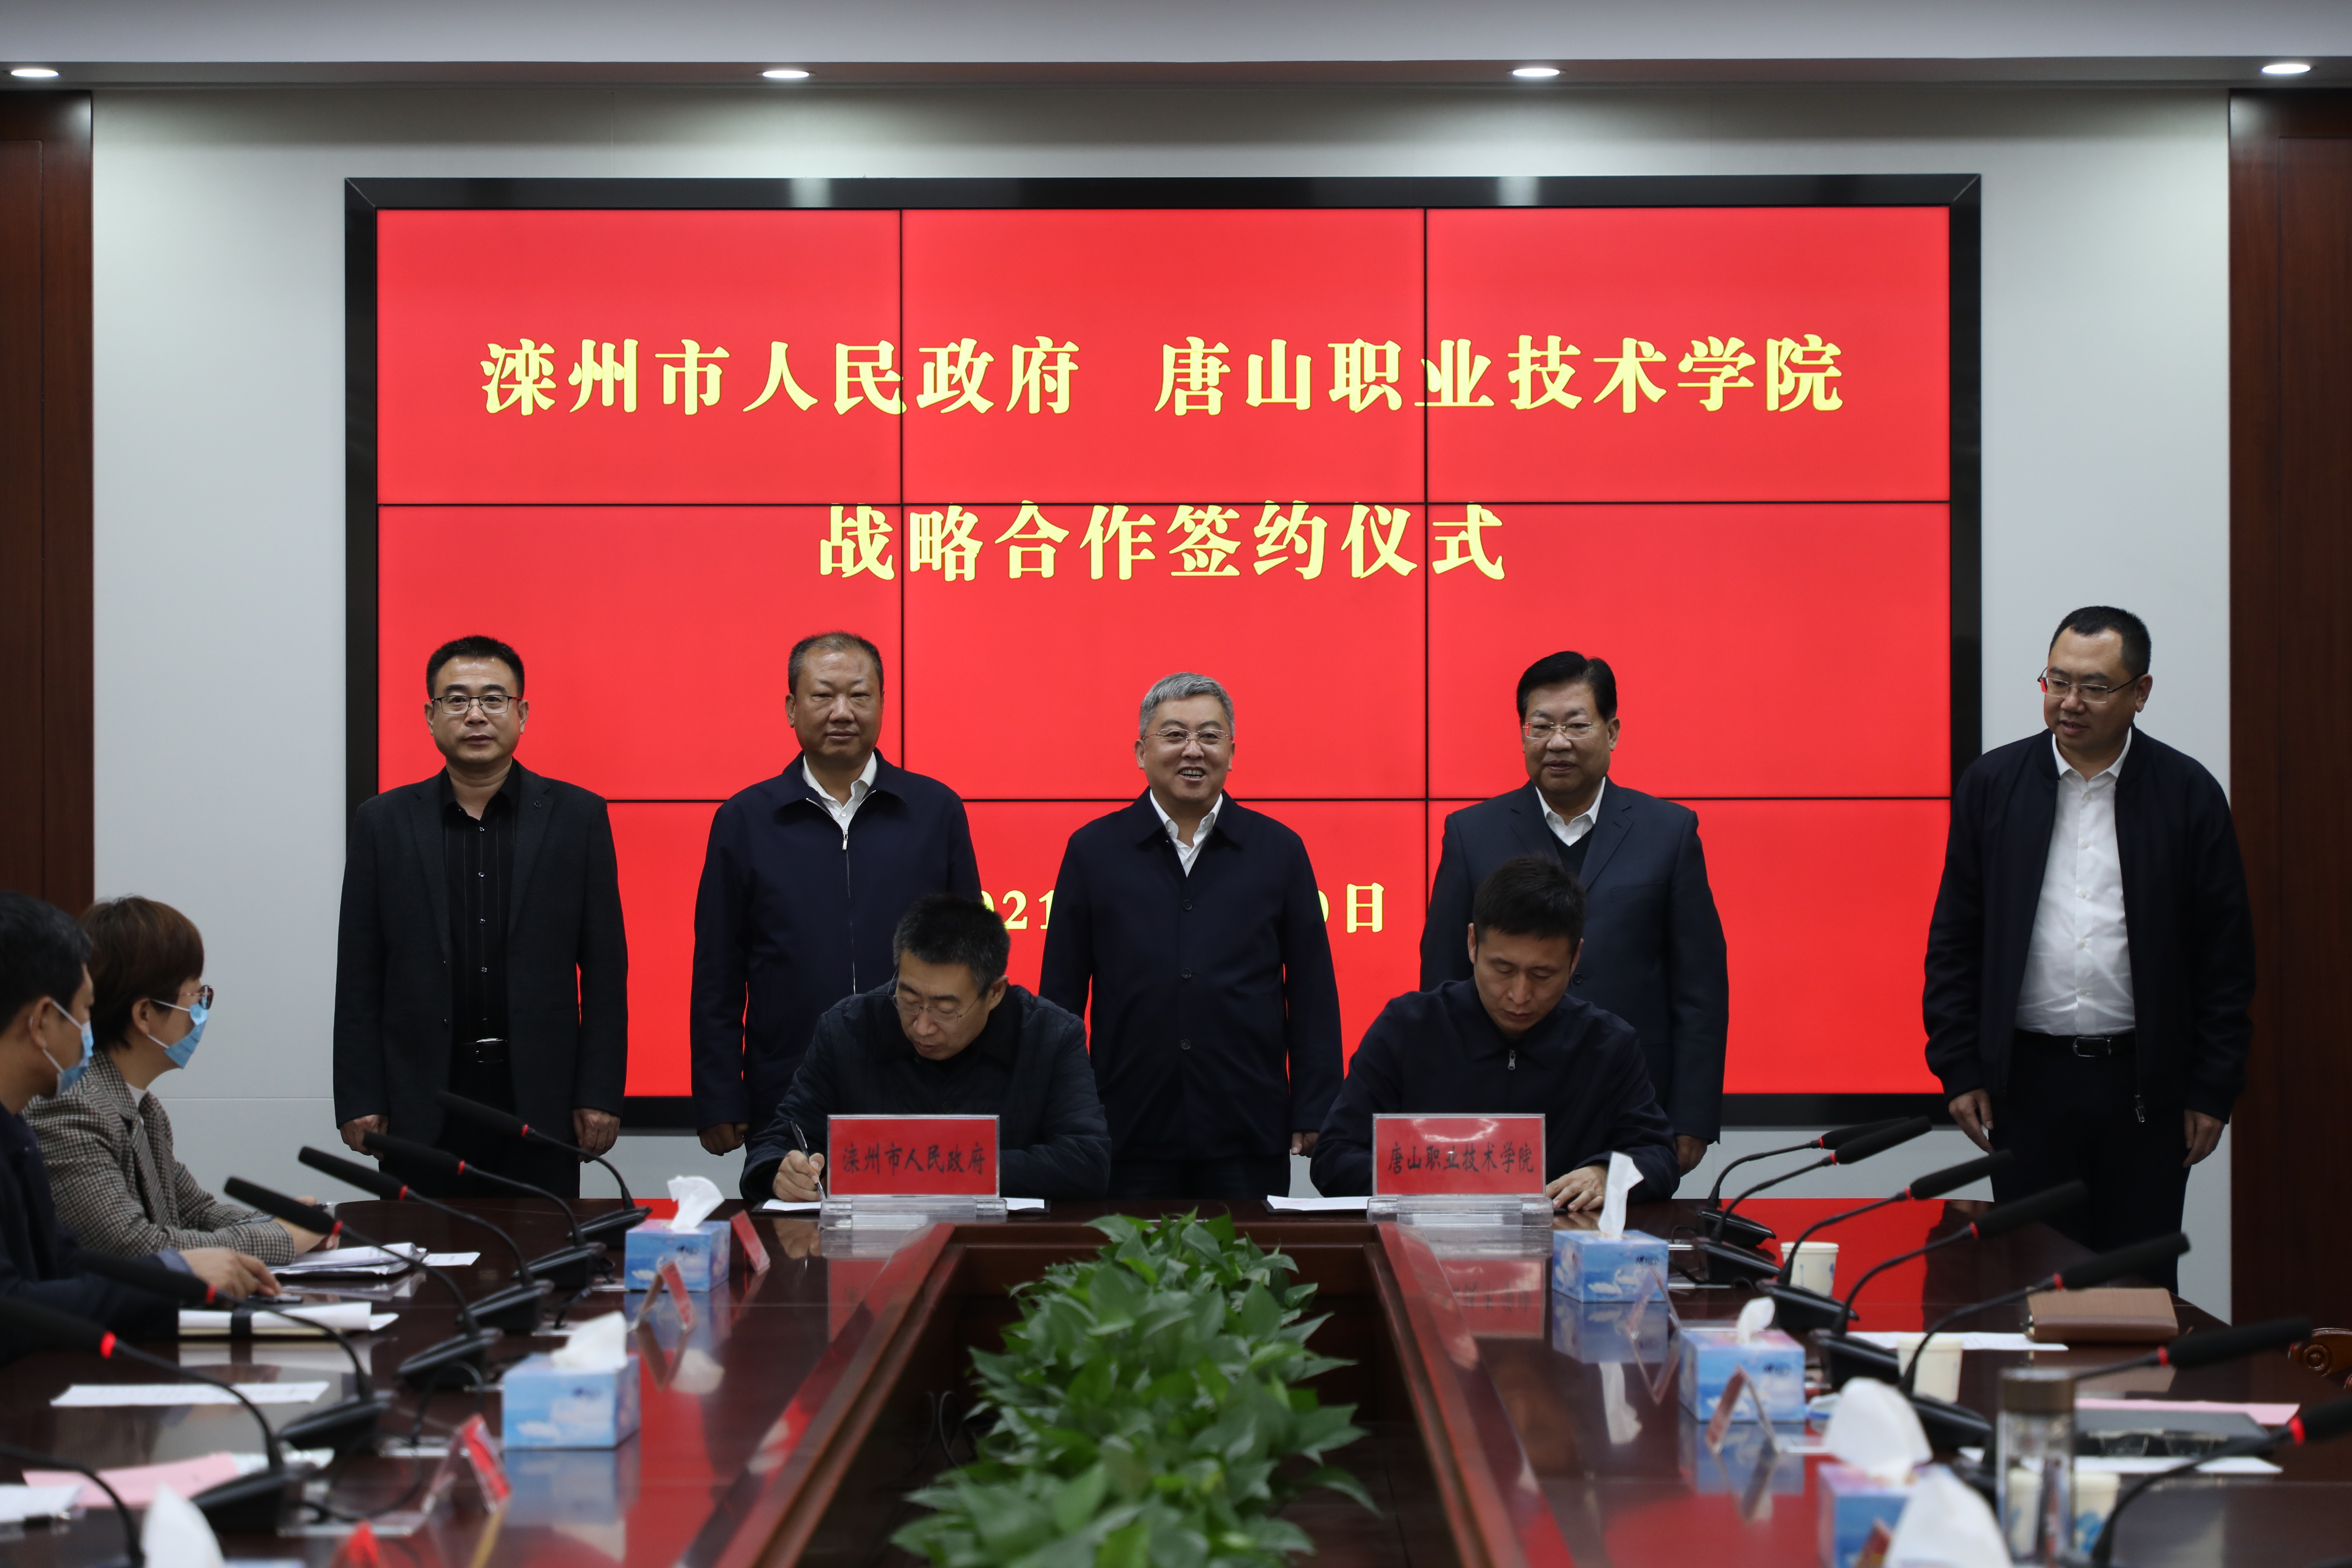     我院与滦州市政府签署战略合作协议